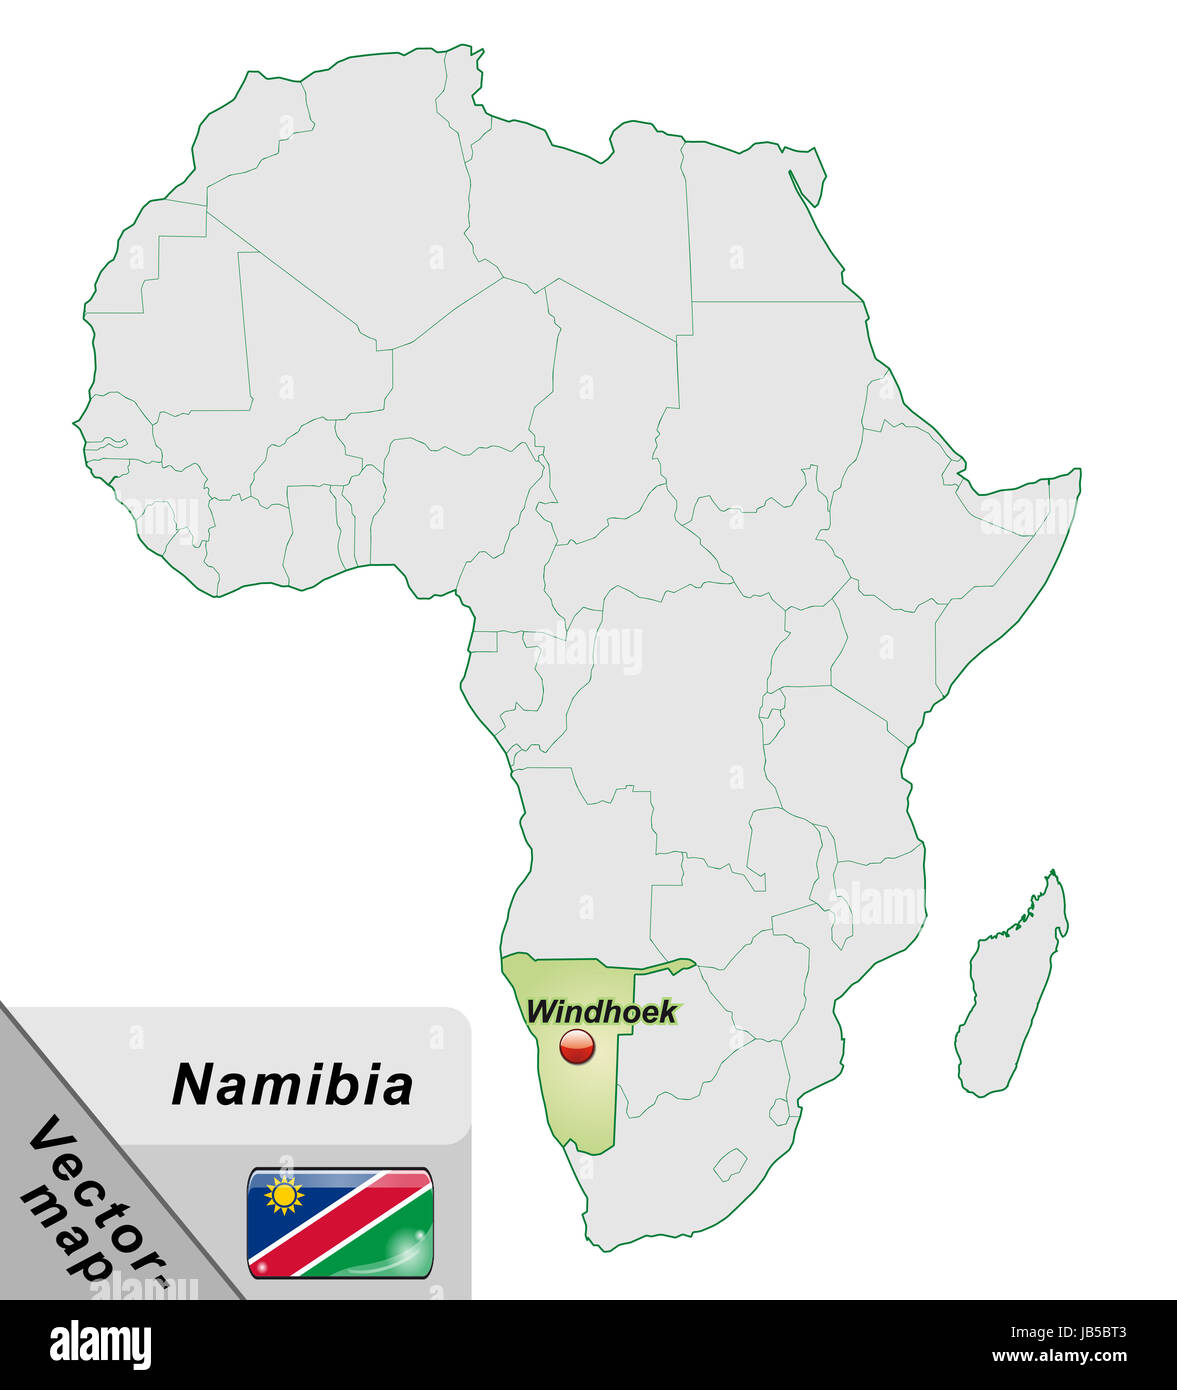 Namibia in  Afrika als Inselkarte  in Pastellgrün. Durch die ansprechende Gestaltung fügt sich die Karte perfekt in Ihr Vorhaben ein. Stock Photo